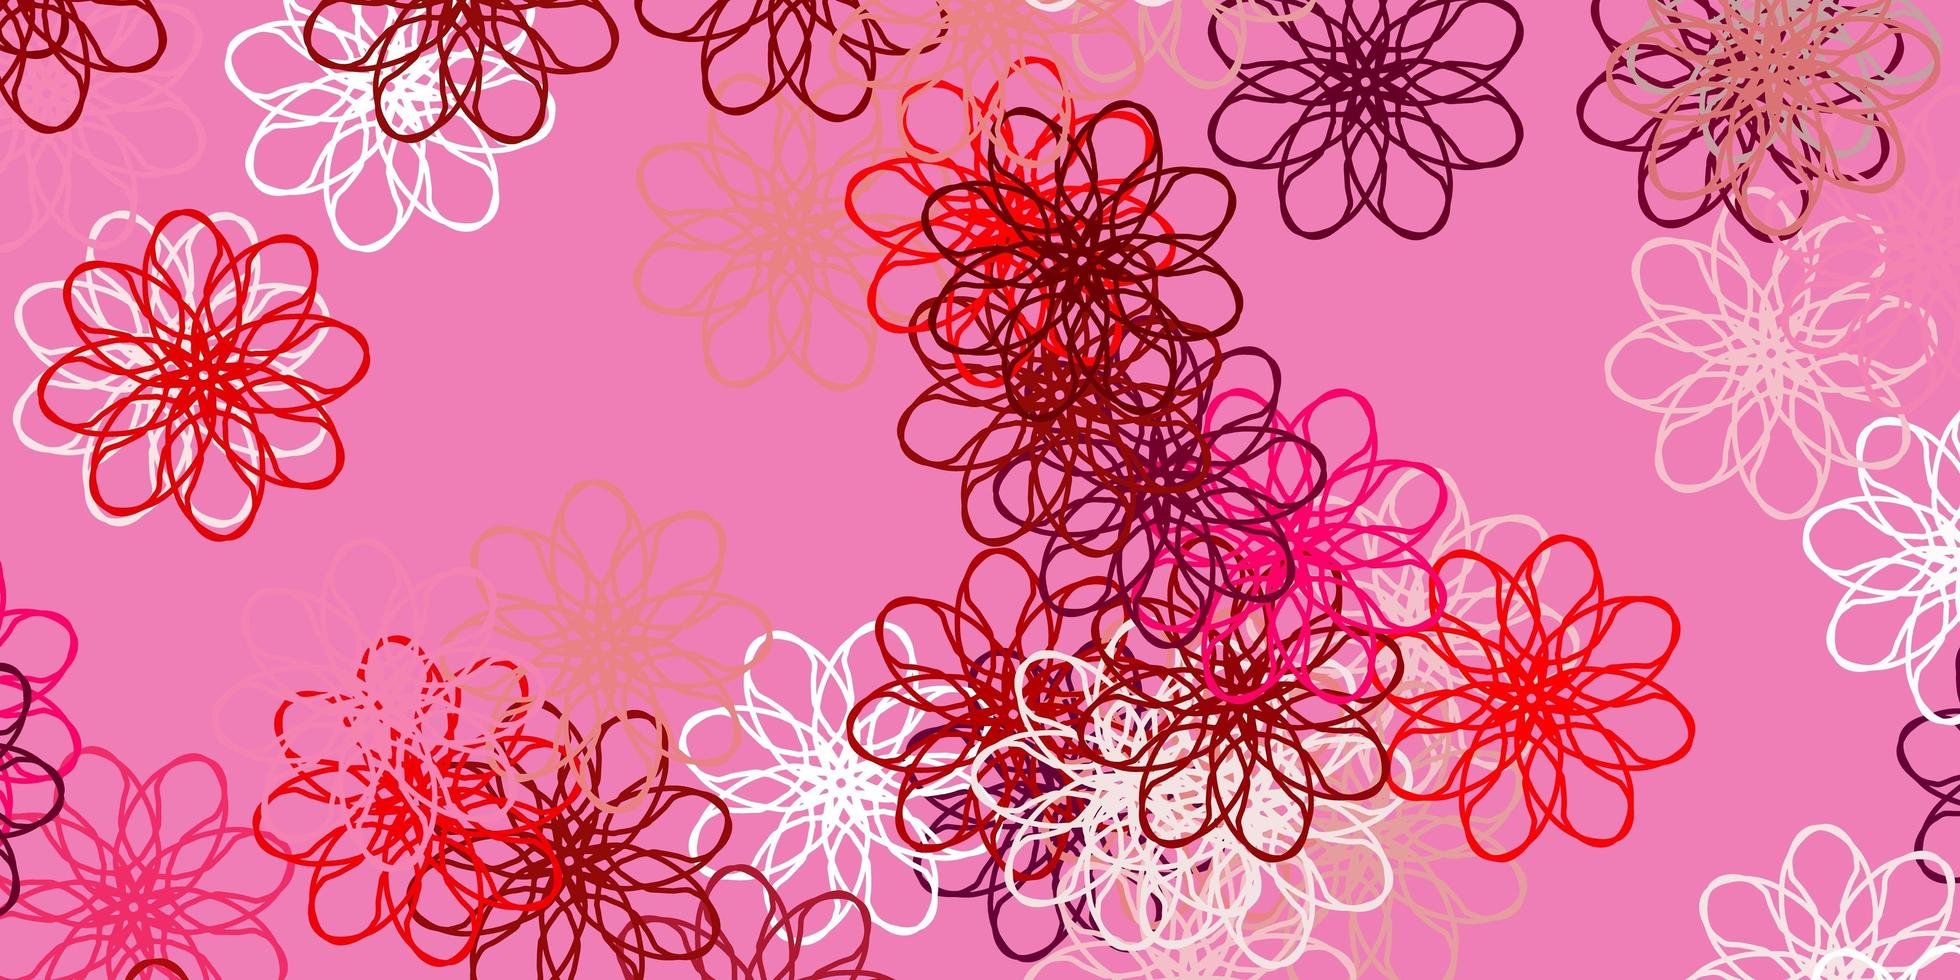 pano de fundo natural de vetor vermelho rosa claro com flores